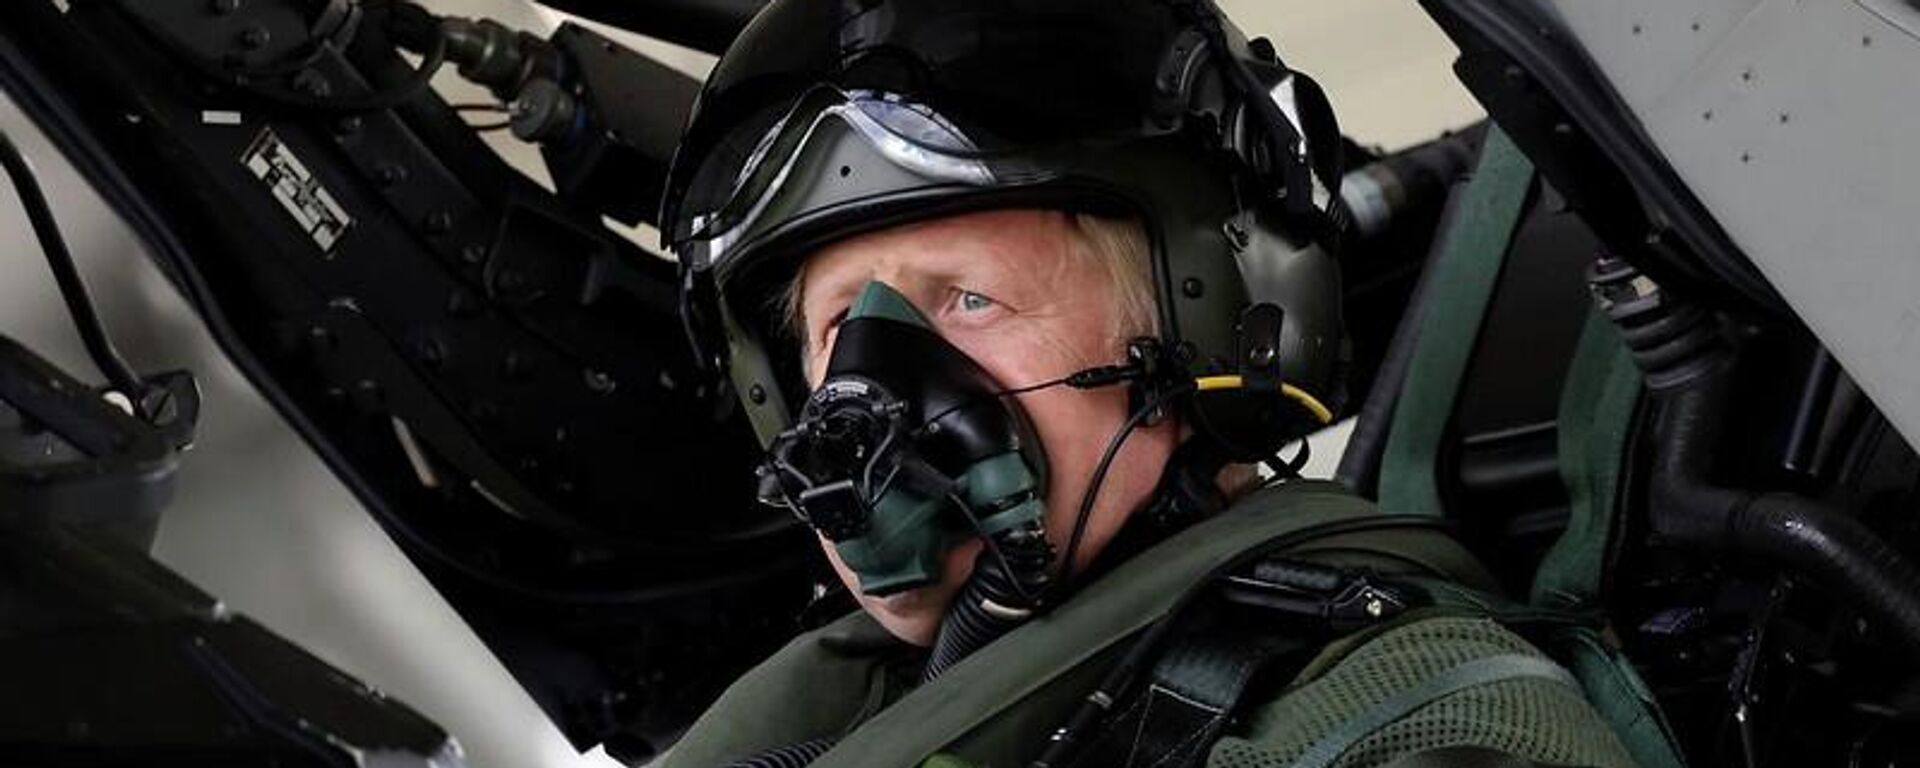 Britanya Başbakanı Boris Johnson, Kraliyet Hava Kuvvetleri'nin (RAF) Coningsby üssünde Typhoon savaş uçağına binip yardımcı pilotluk yaparken (14 Temmuz 2022)  - Sputnik Türkiye, 1920, 19.07.2022